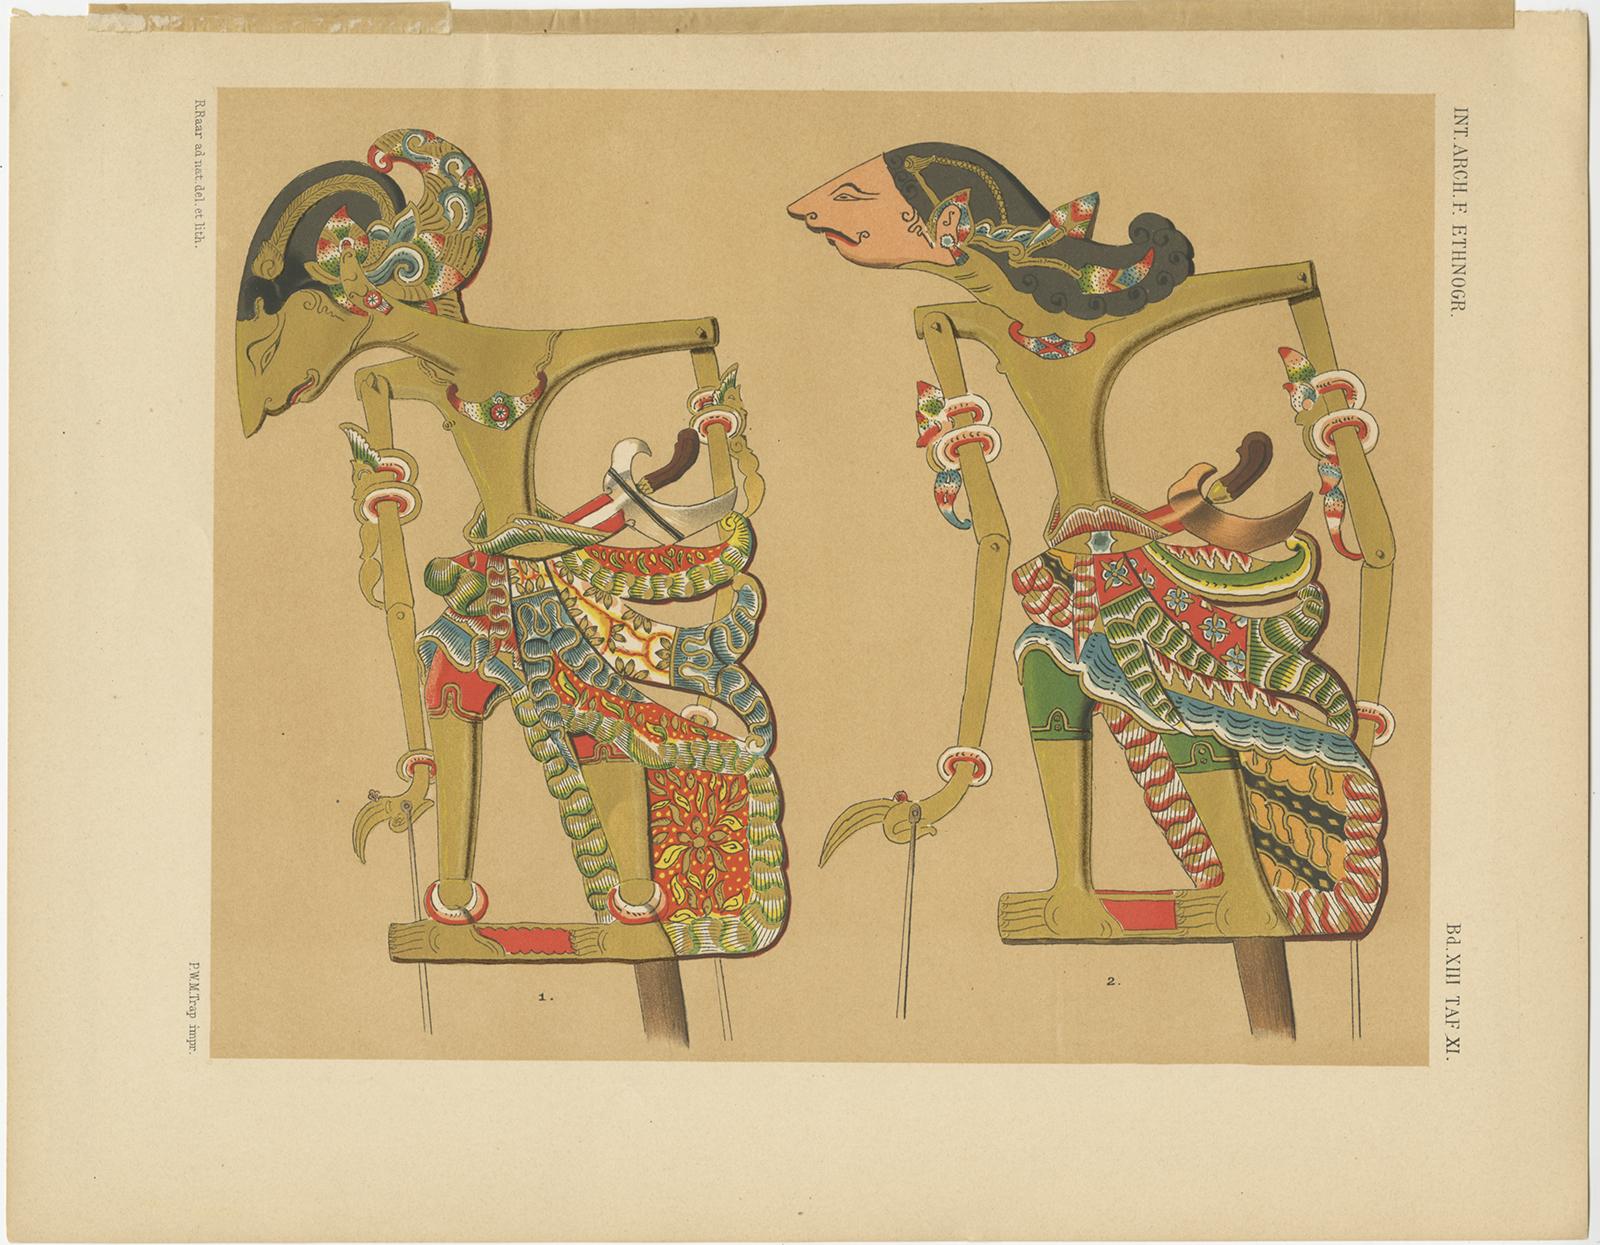 Satz von zehn antiken Drucken von Wayang-Puppen, einer traditionellen Form des Puppentheaterspiels, die ursprünglich in den Kulturen Javas, Indonesien, zu finden ist. Diese Drucke stammen aus 